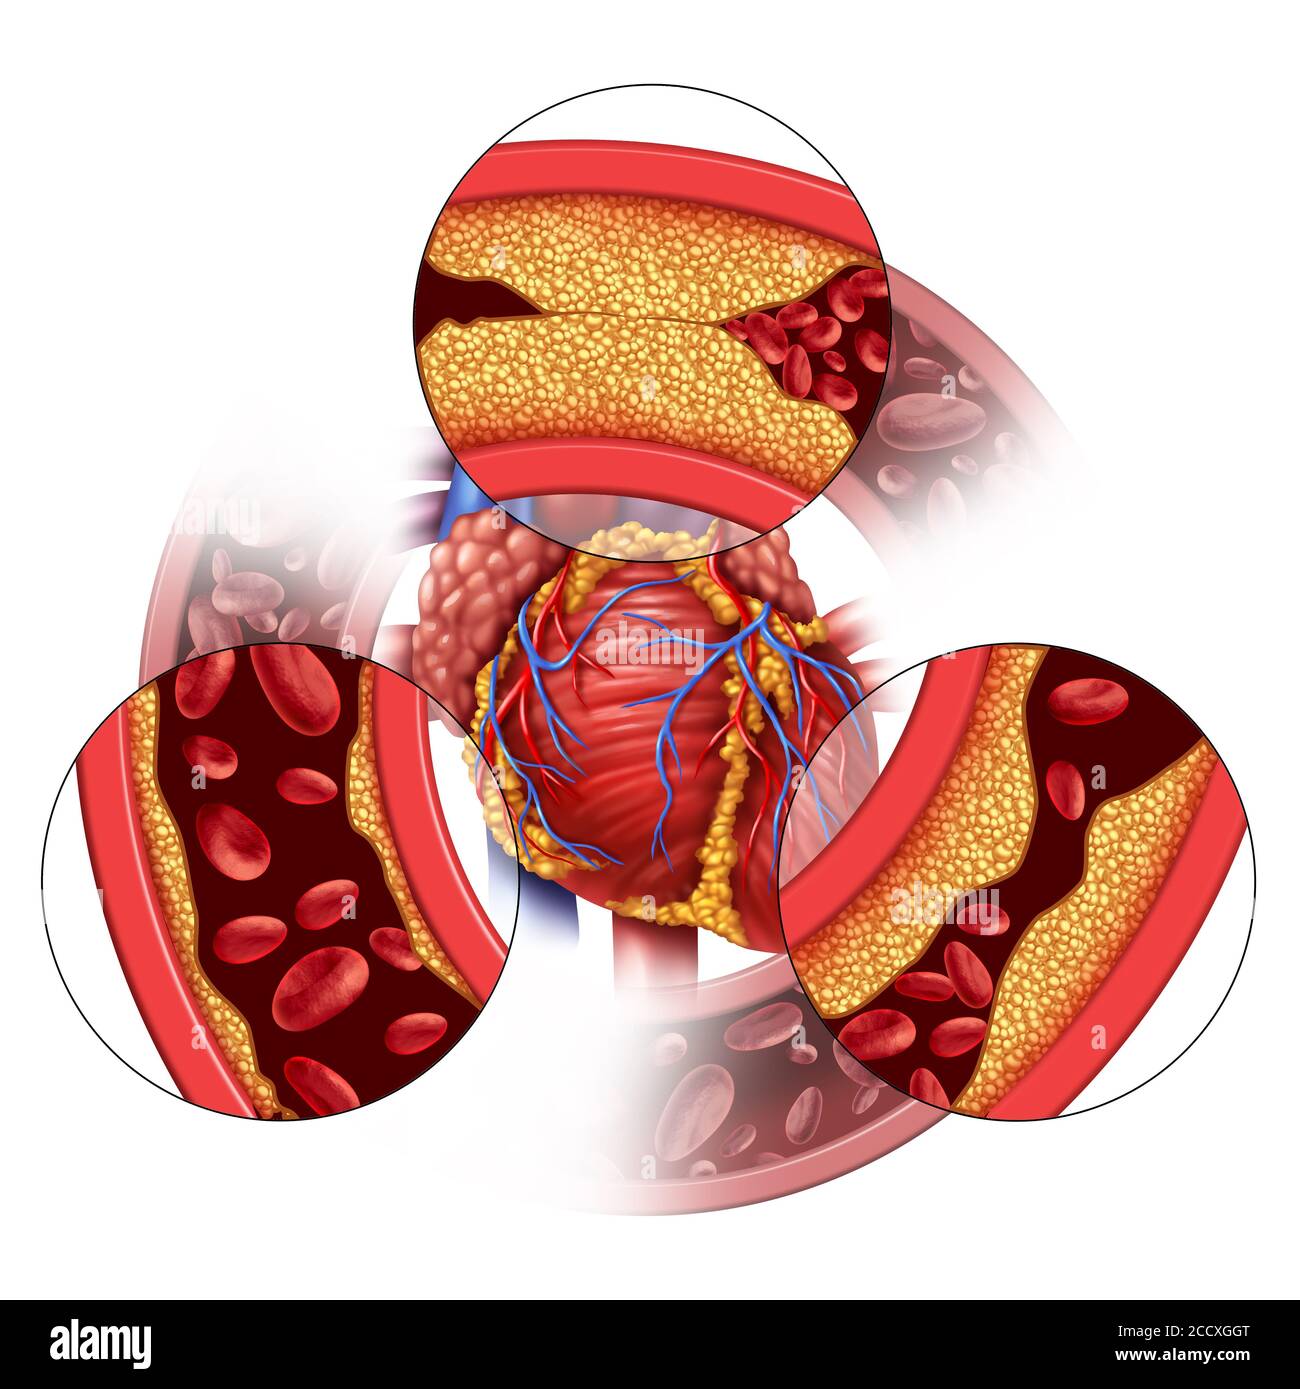 La maladie des artères cardiaques et le concept médical coronaire comme formation progressive de plaque entraînant l'obstruction des artères et l'athérosclérose comme anatomie humaine. Banque D'Images